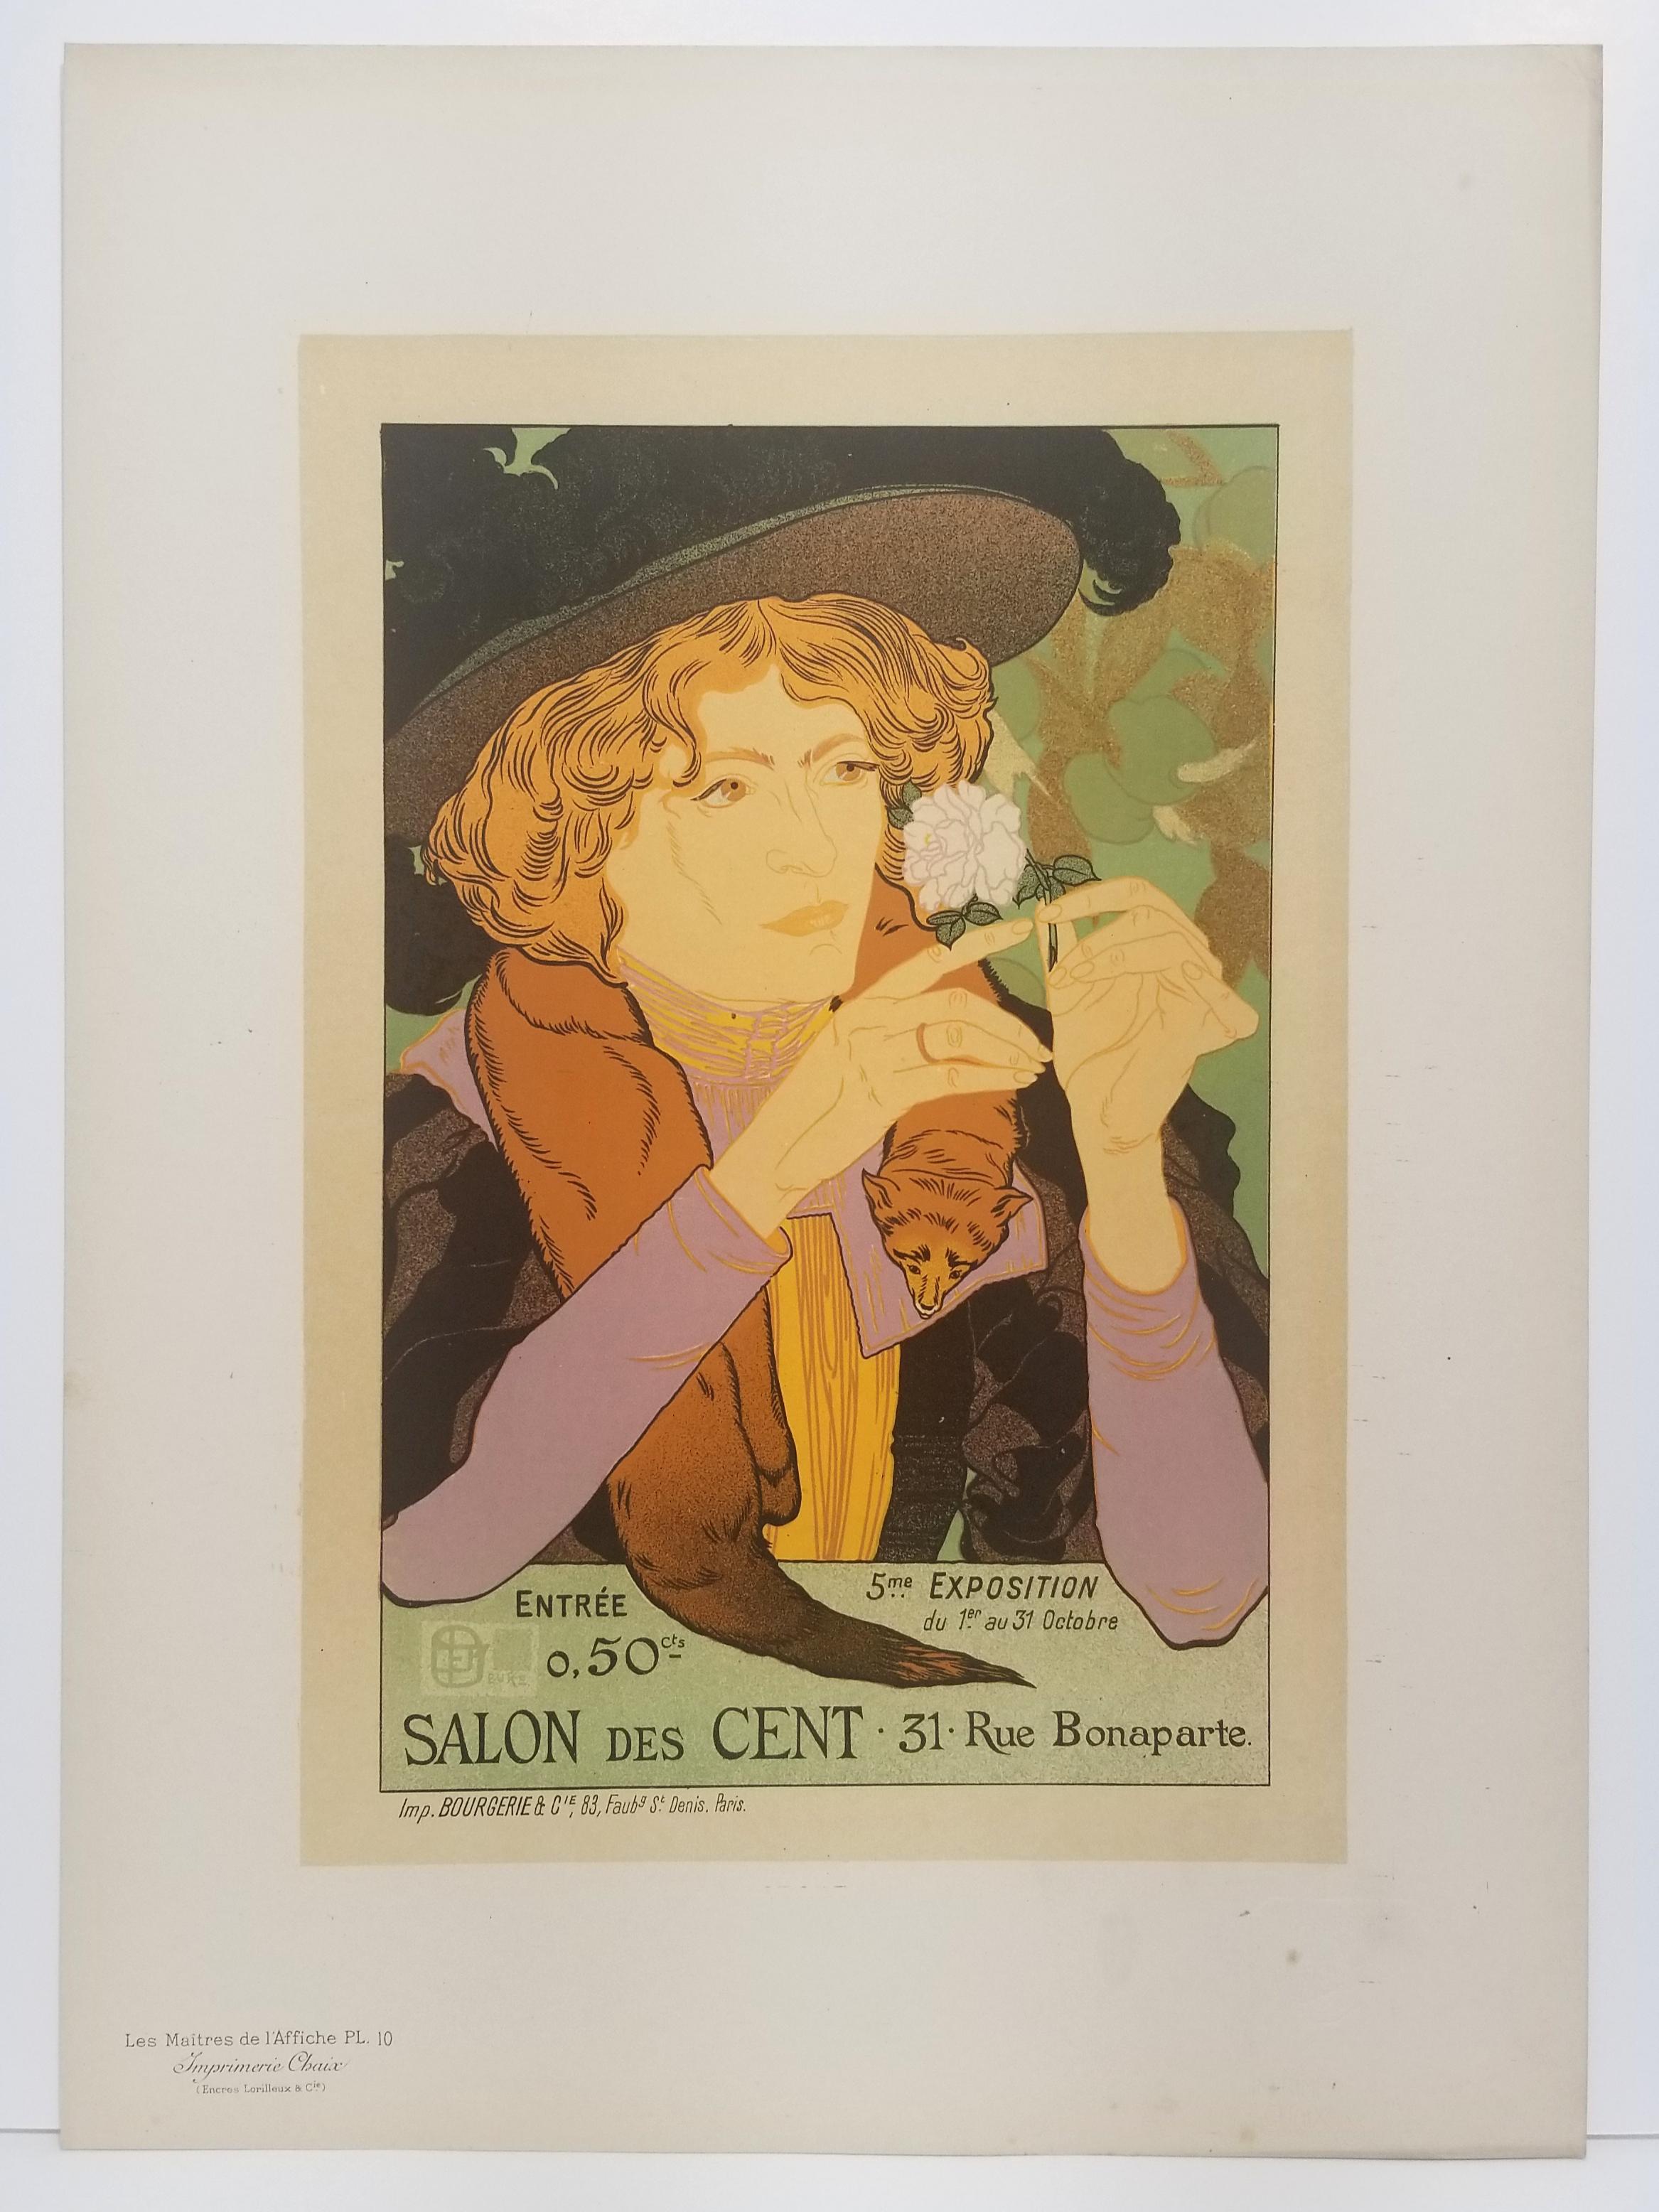 5ème exposition d'art, Salon des Cent.  - Print by Georges De Feure